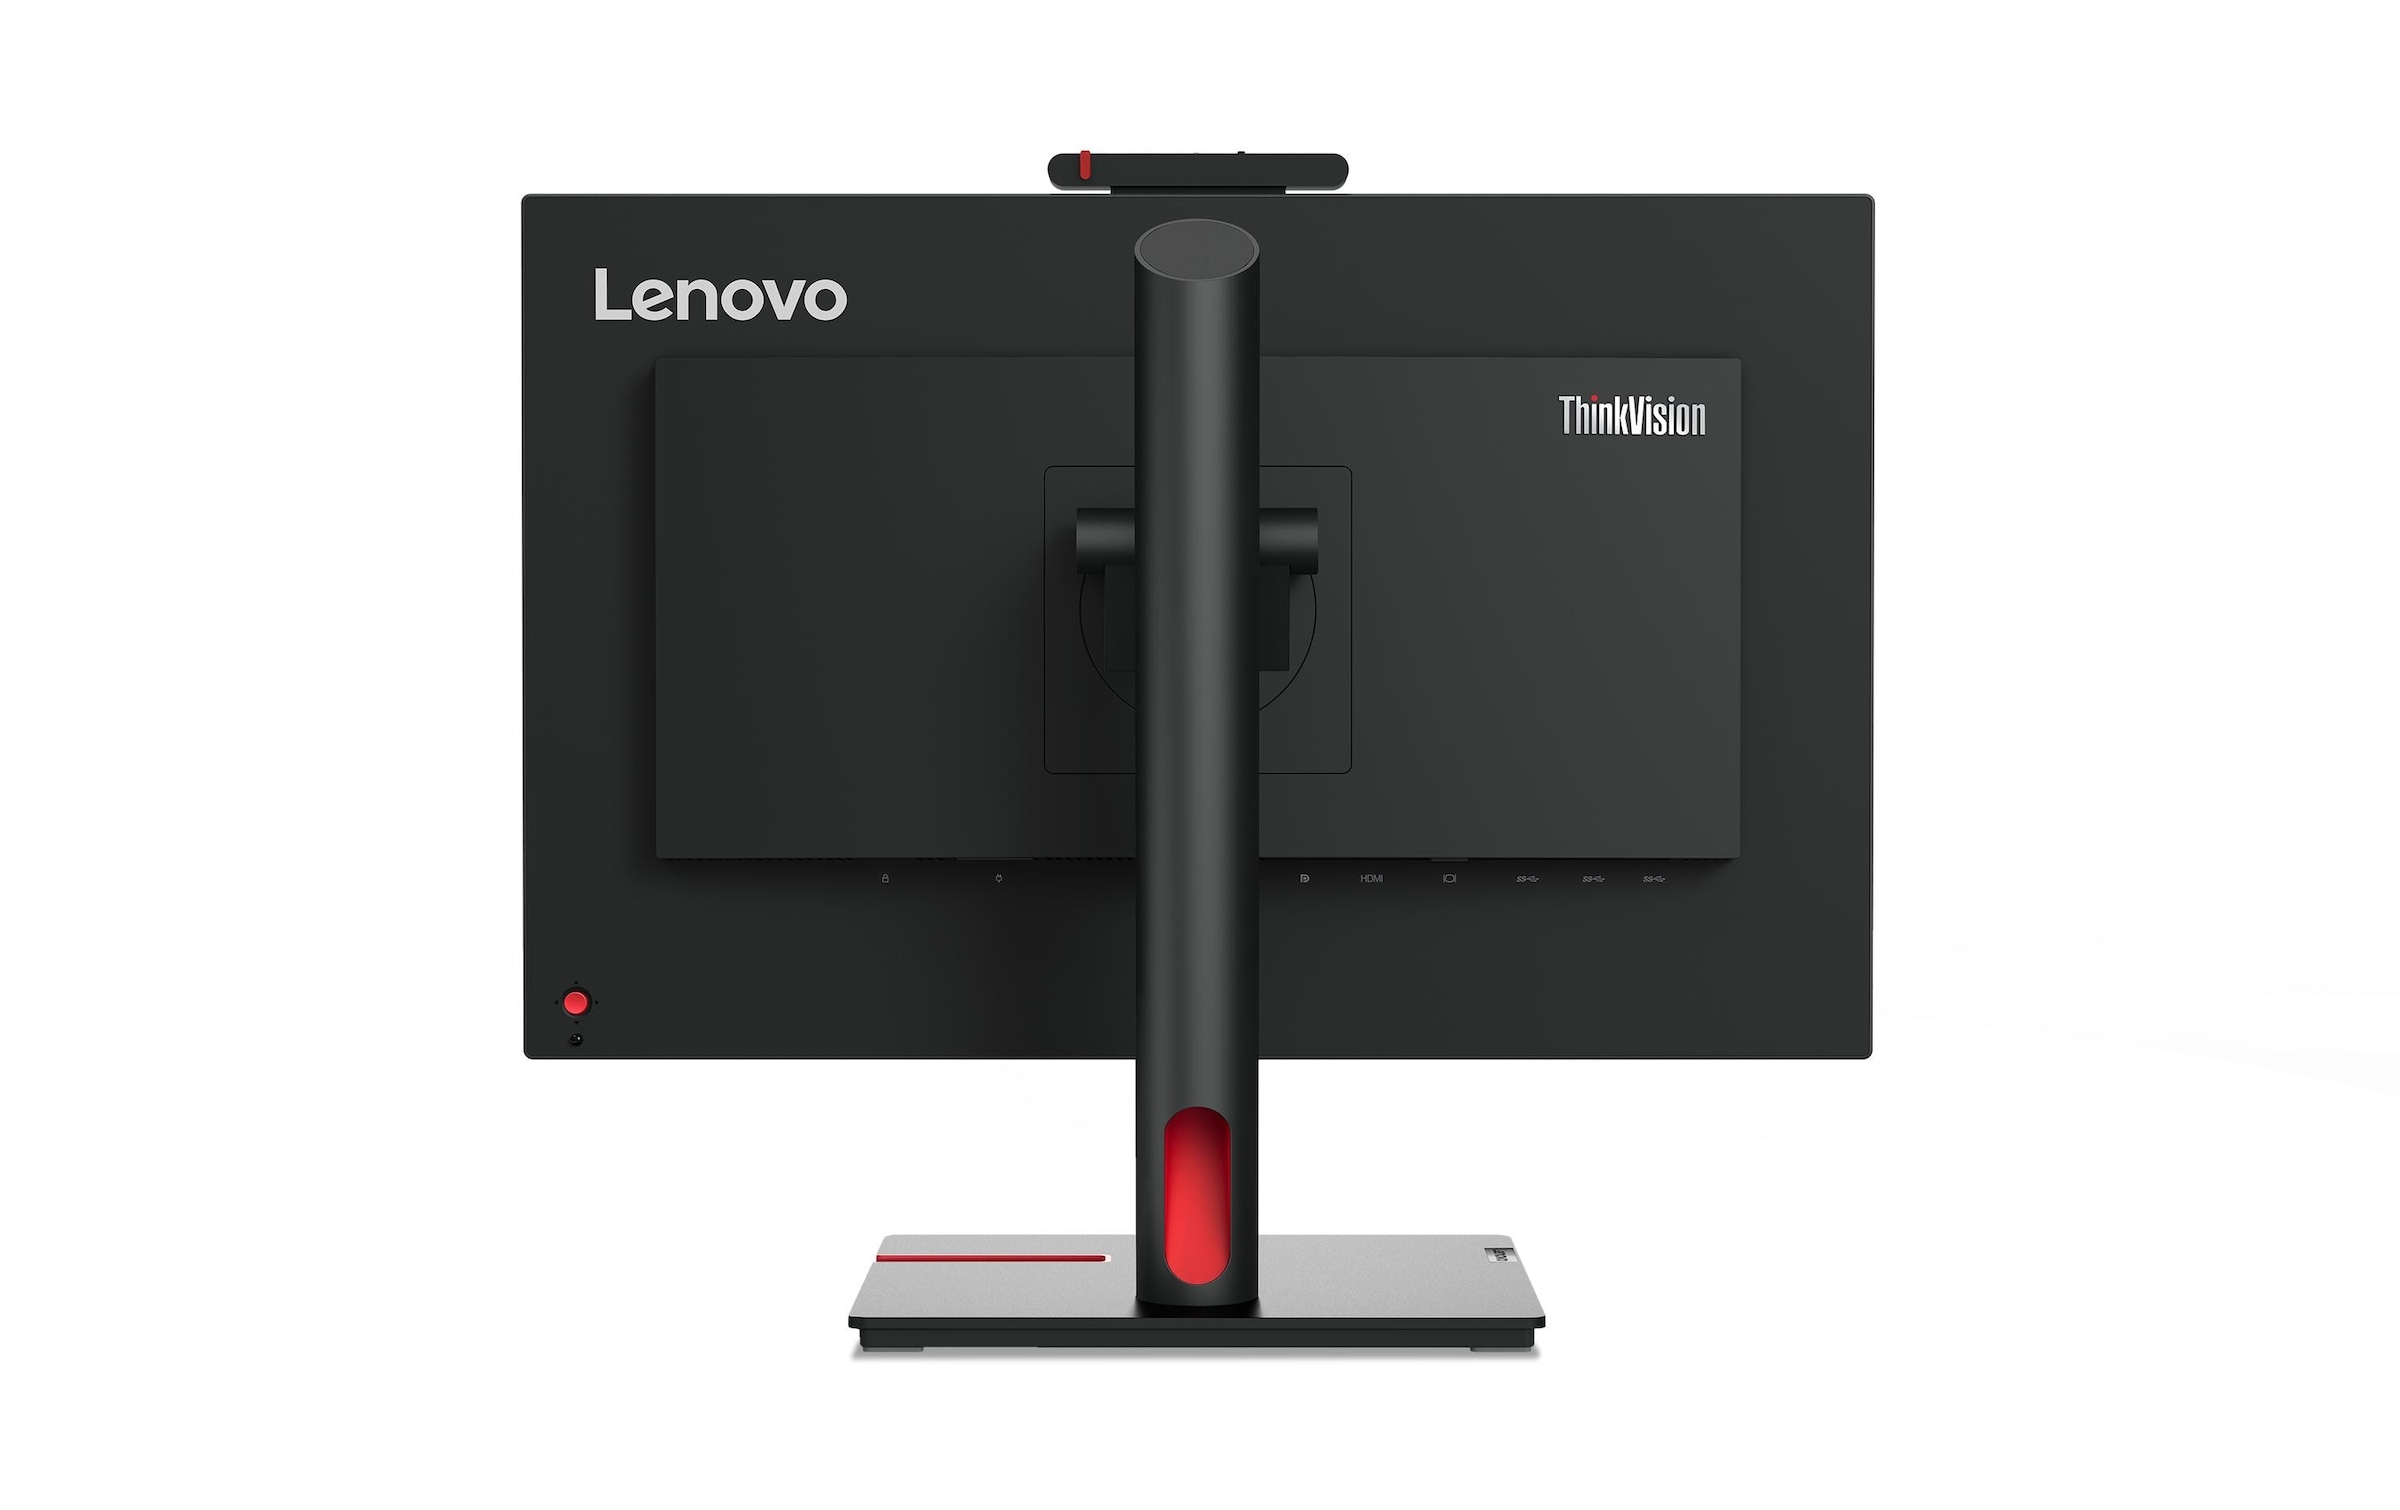 Lenovo LCD-Monitor »ThinkVision T24v-30«, 60,21 cm/23,8 Zoll, 1920 x 1080 px, Full HD, 75 Hz